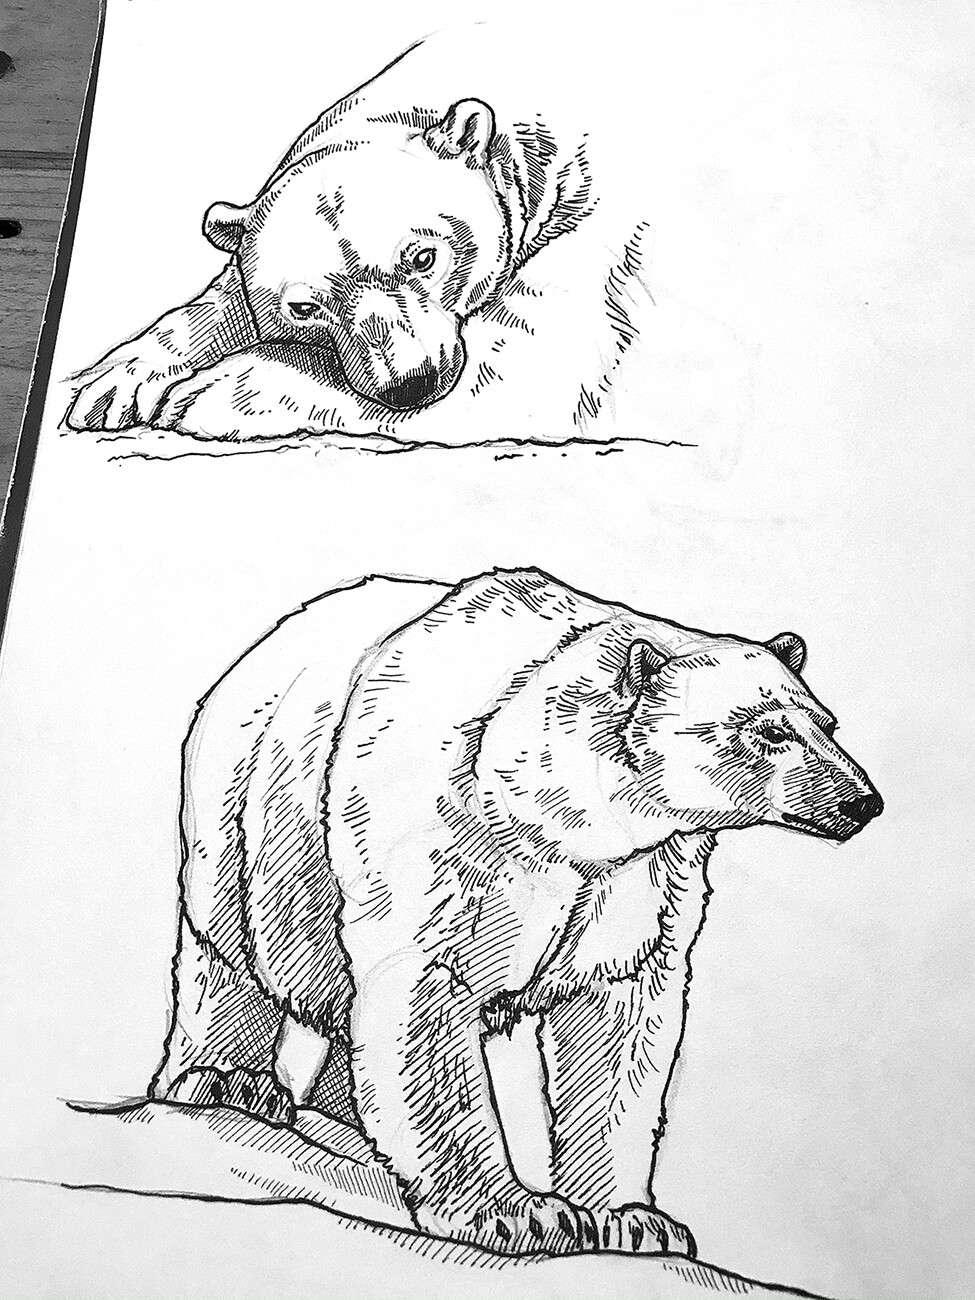 Soft animal - polar bears